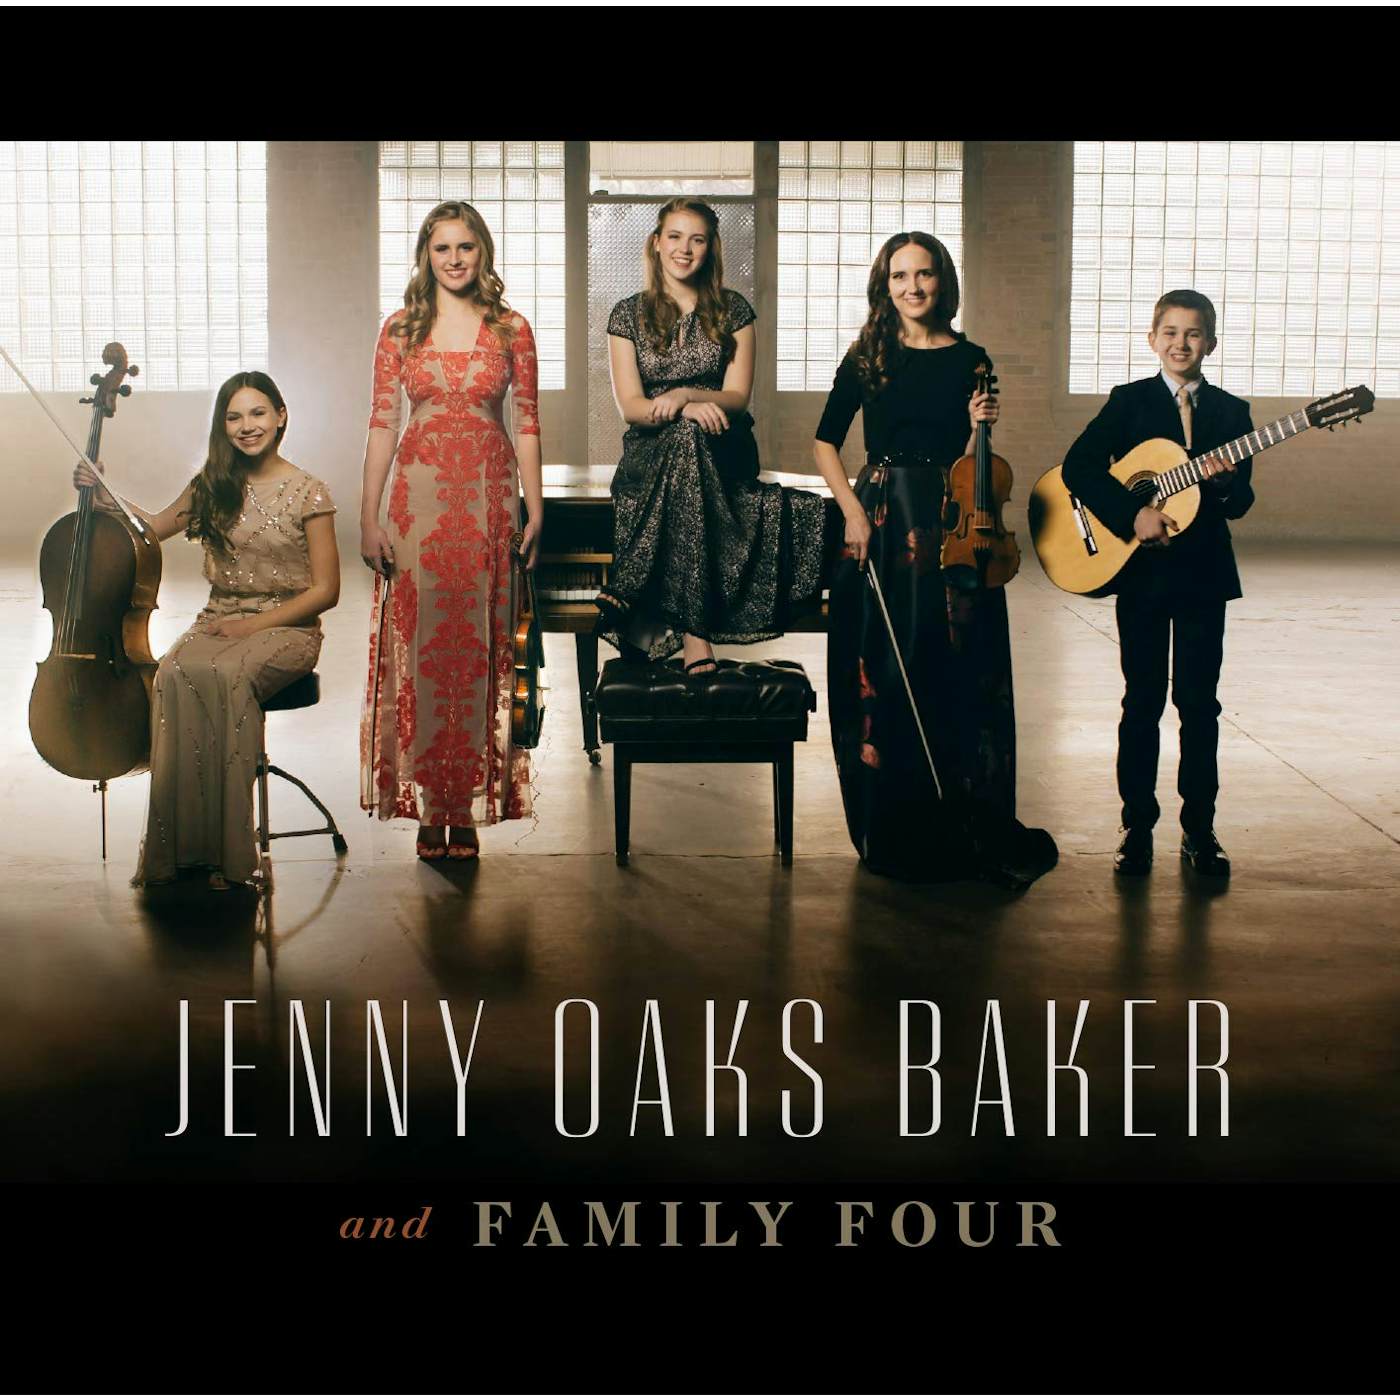 JENNY OAKS BAKER & FAMILY FOUR CD